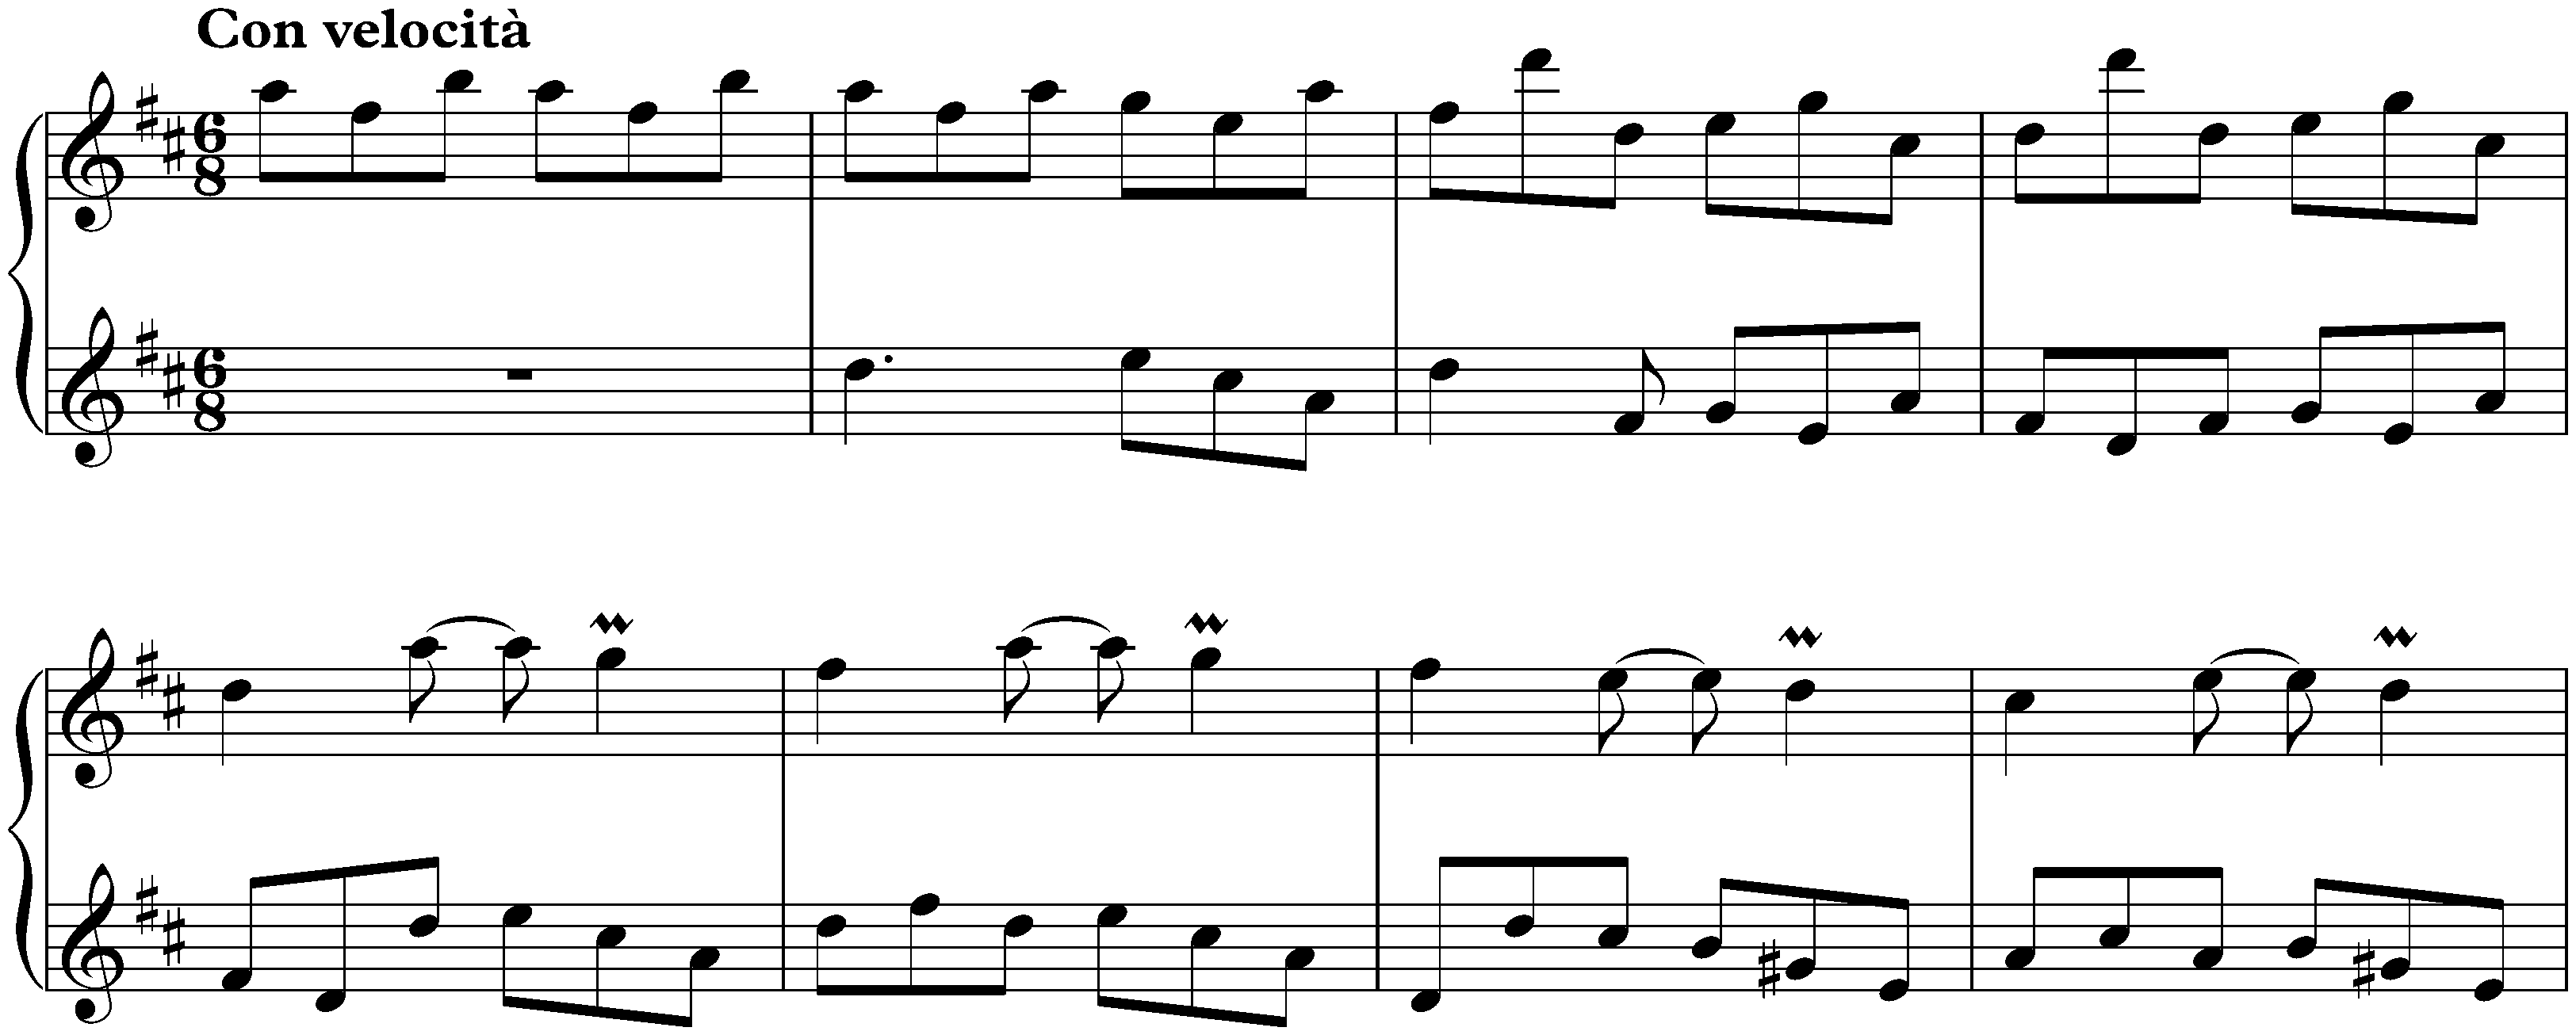 Sonata in D major, K. 278